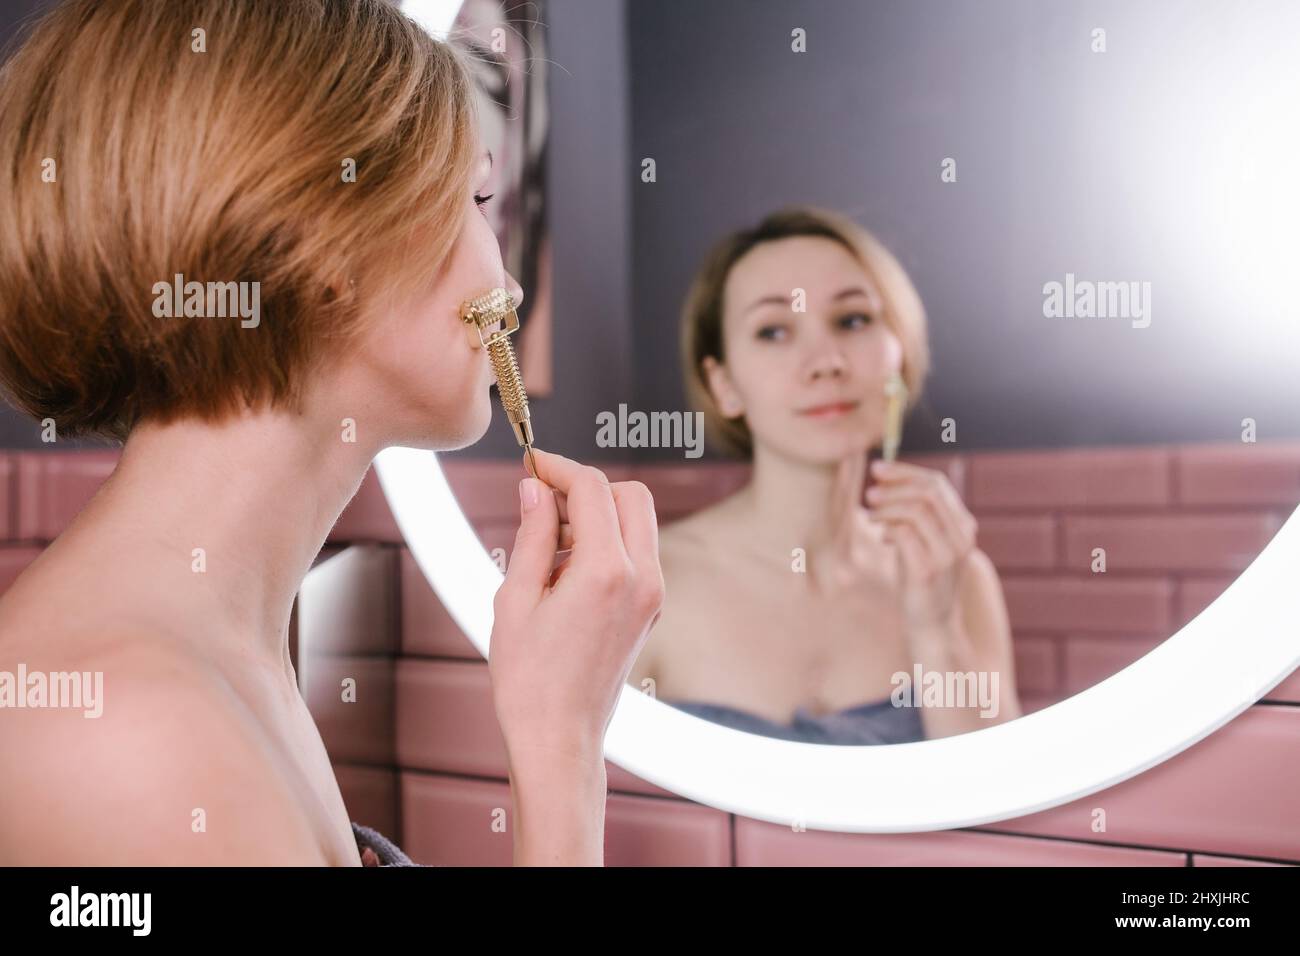 Femme à l'élévation massante visage avec rouleau de gua sha devant un miroir de salle de bains Banque D'Images